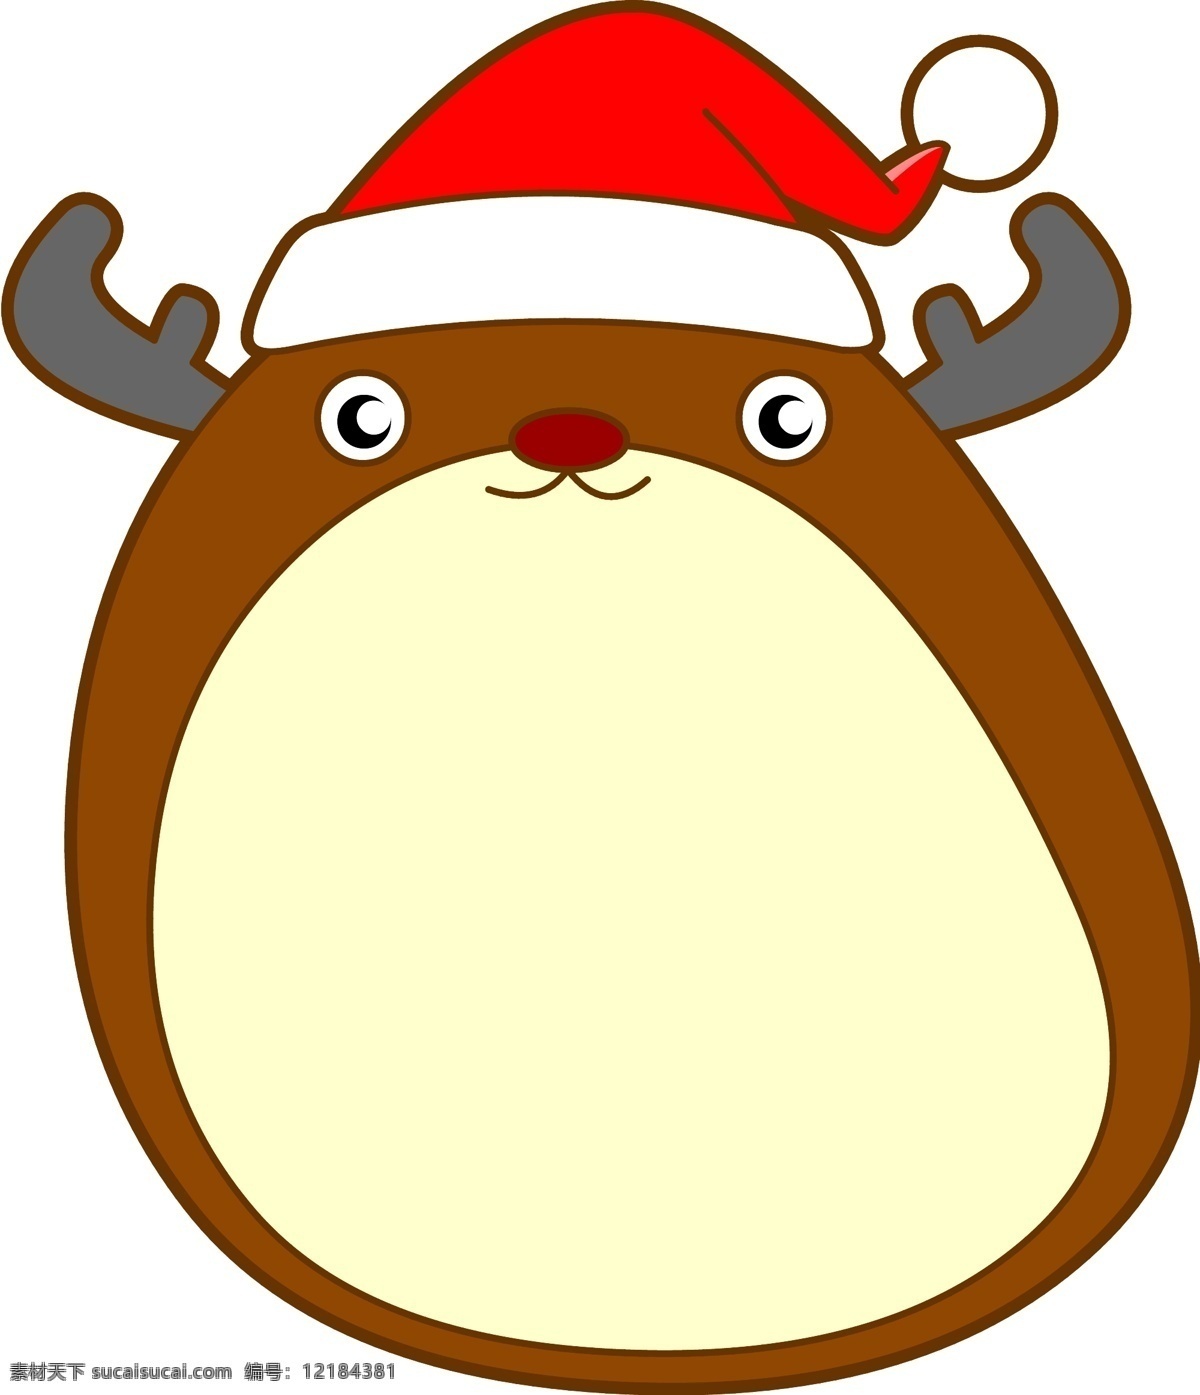 圣诞节 q 版 卡通 麋鹿 不规则 边框 元素 圣诞节麋鹿 卡通圣诞节 q版 可爱卡通麋鹿 卡通手绘麋鹿 不规则边框